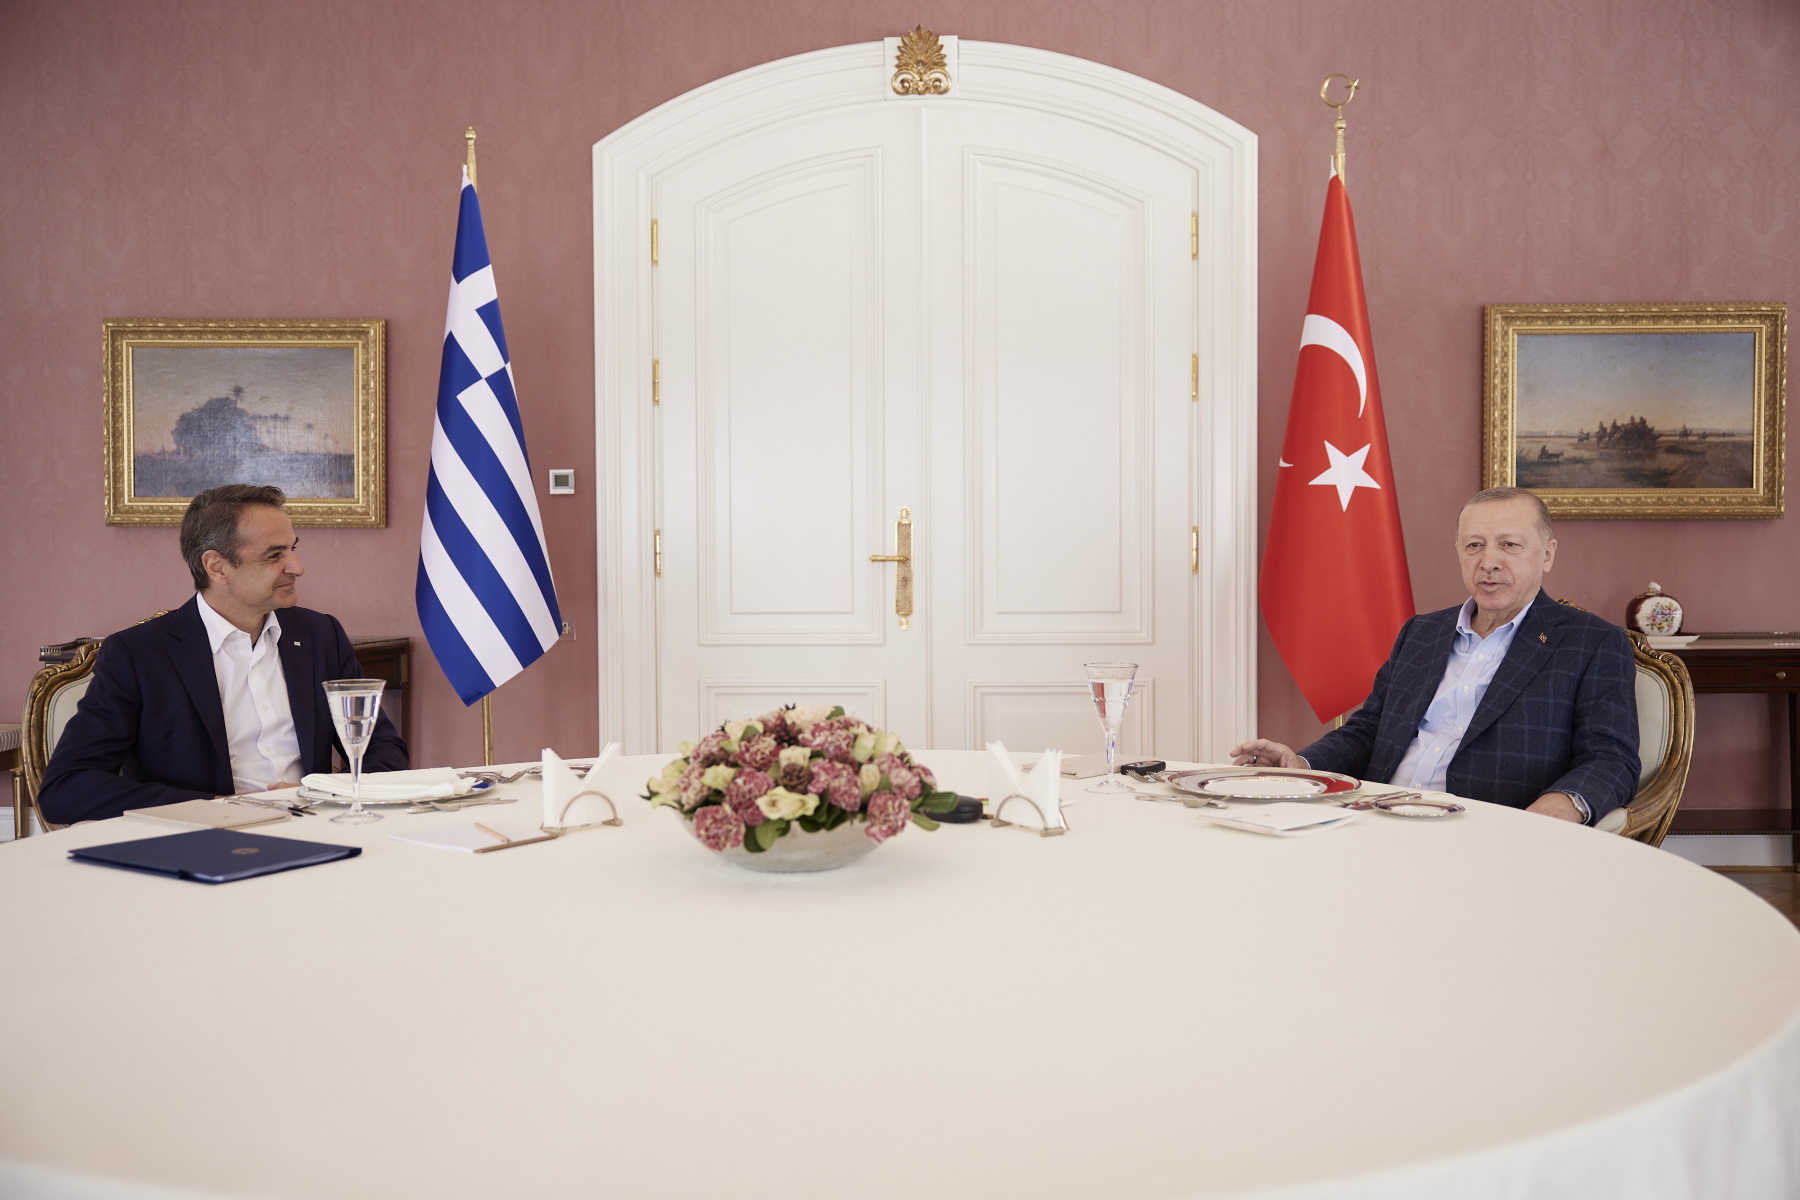 Μητσοτάκης – Ερντογάν: «Βάλαμε θεμέλια για βελτίωση των σχέσεων» αναφέρουν κυβερνητικές πηγές